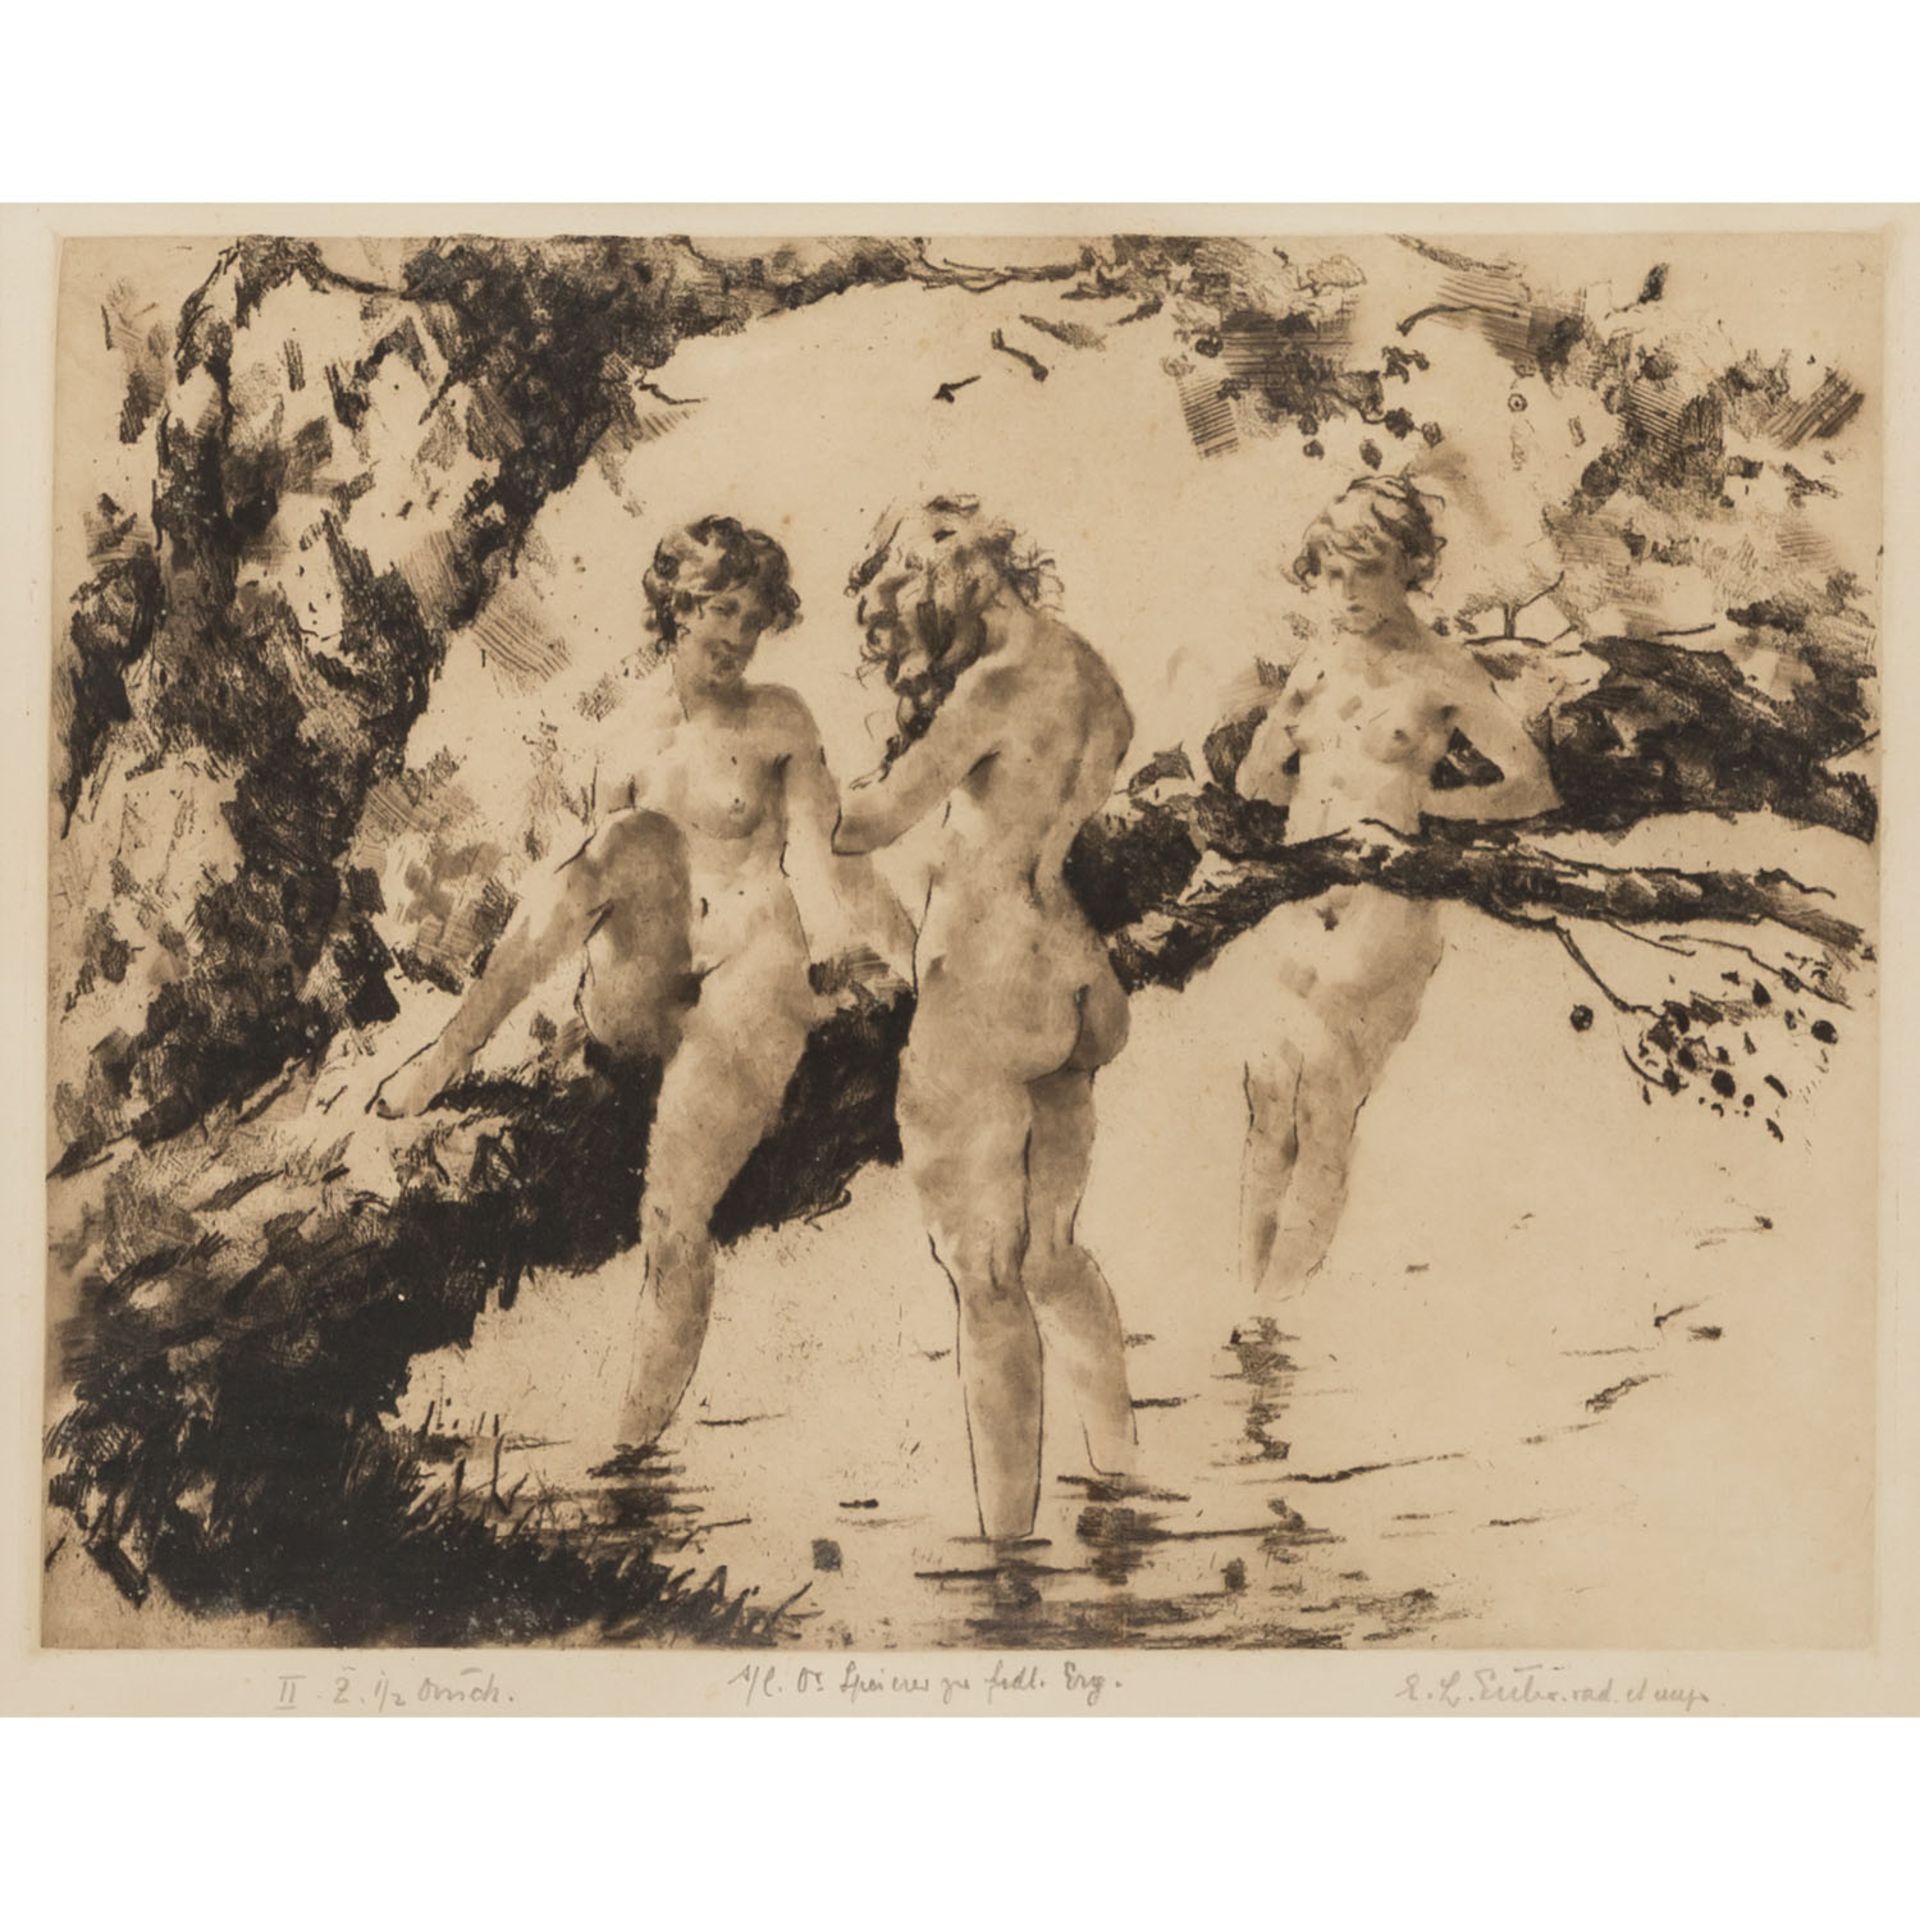 EULER, EMIL LUDWIG (1878-1955), "Drei badende junge Frauen",an einem Baum am Ufer des Gewässers